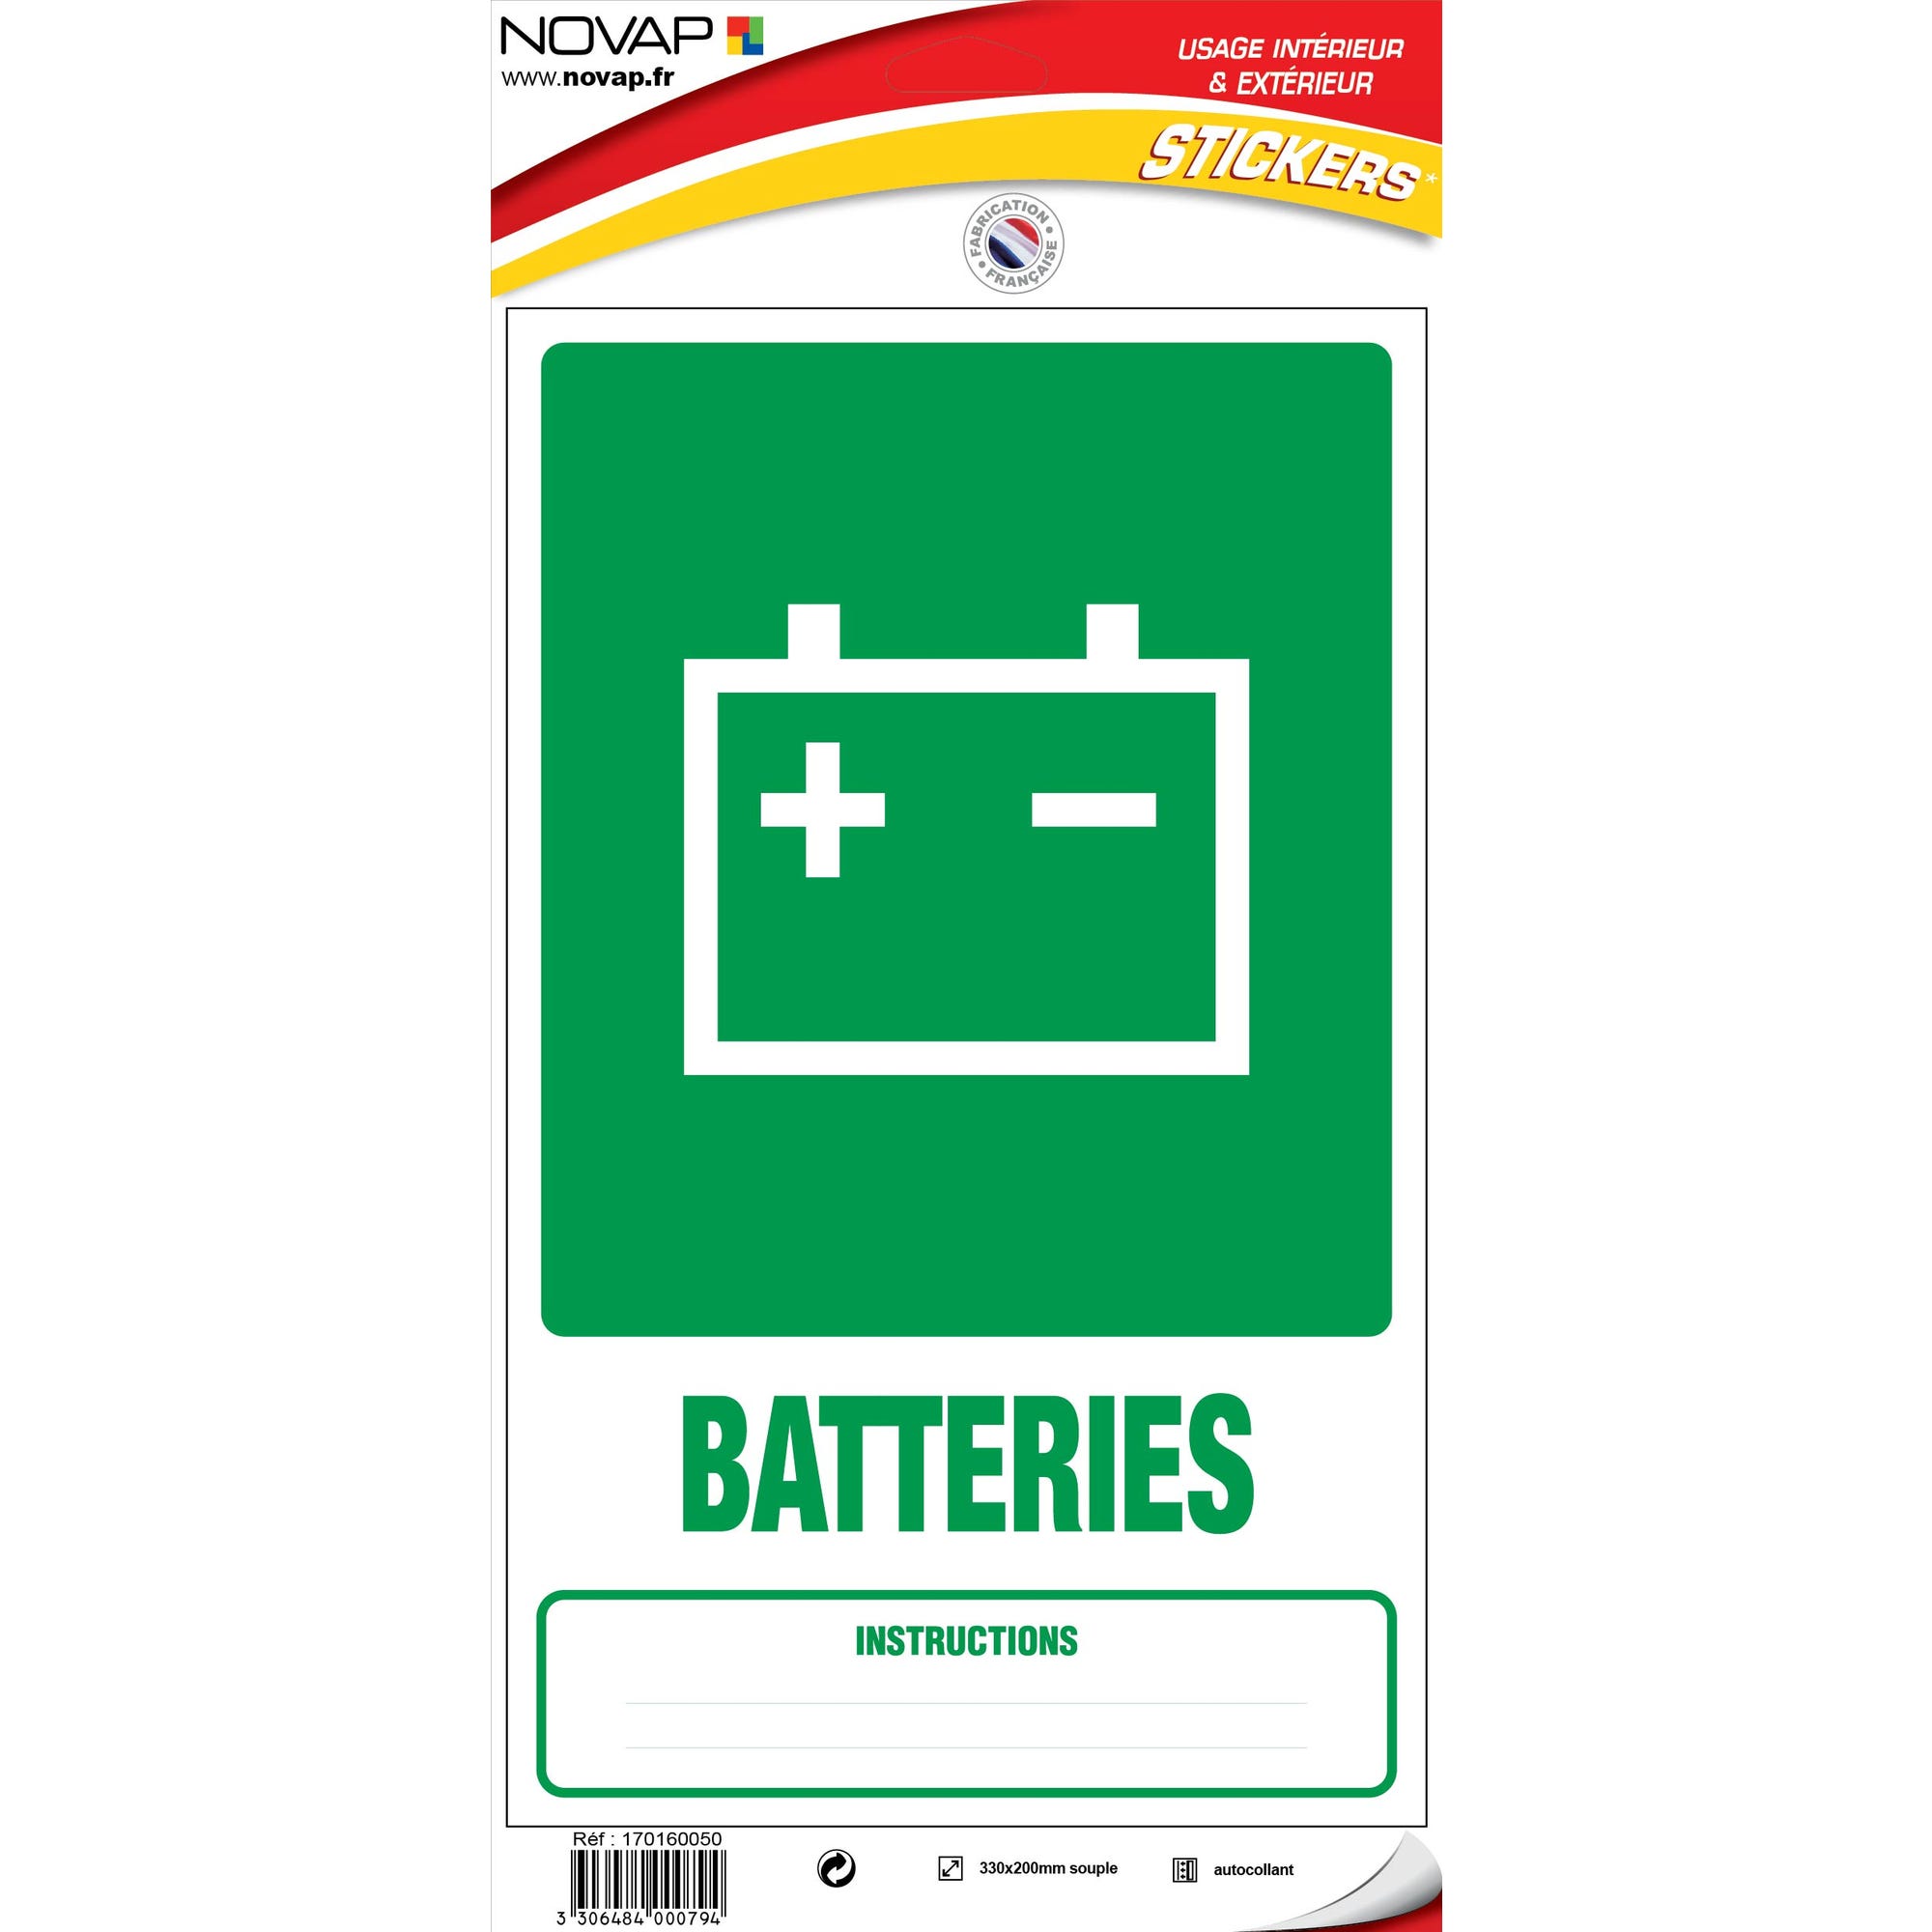 Panneau Dechets batteries - Vinyle adhésif 330x200mm - 4000794 0